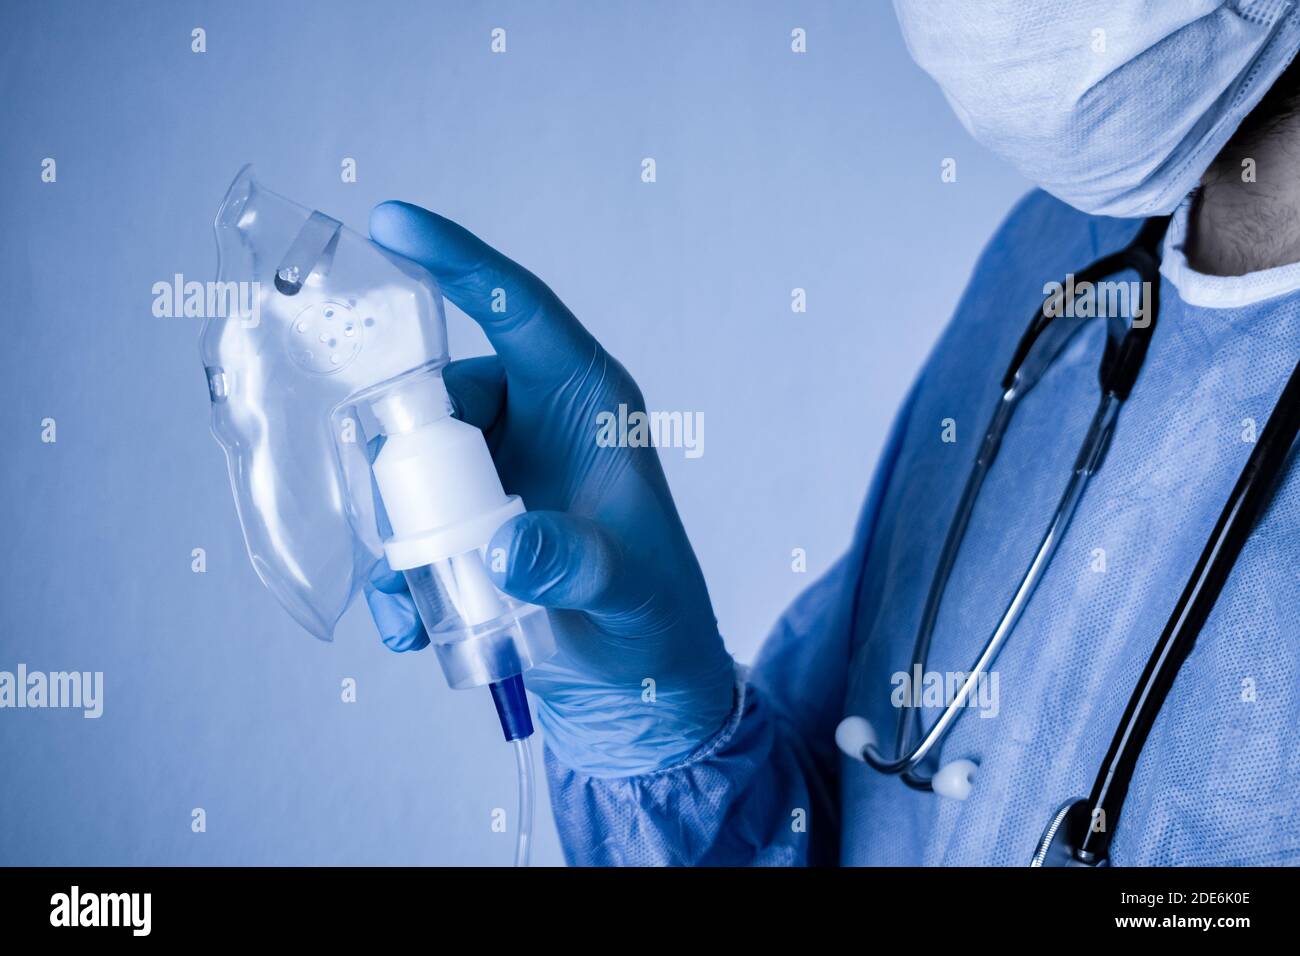 Medico che tiene la maschera di ossigeno in mano. Fotografia concettuale per il Covid-19 e l'epidemia di Coronavirus. Foto Stock